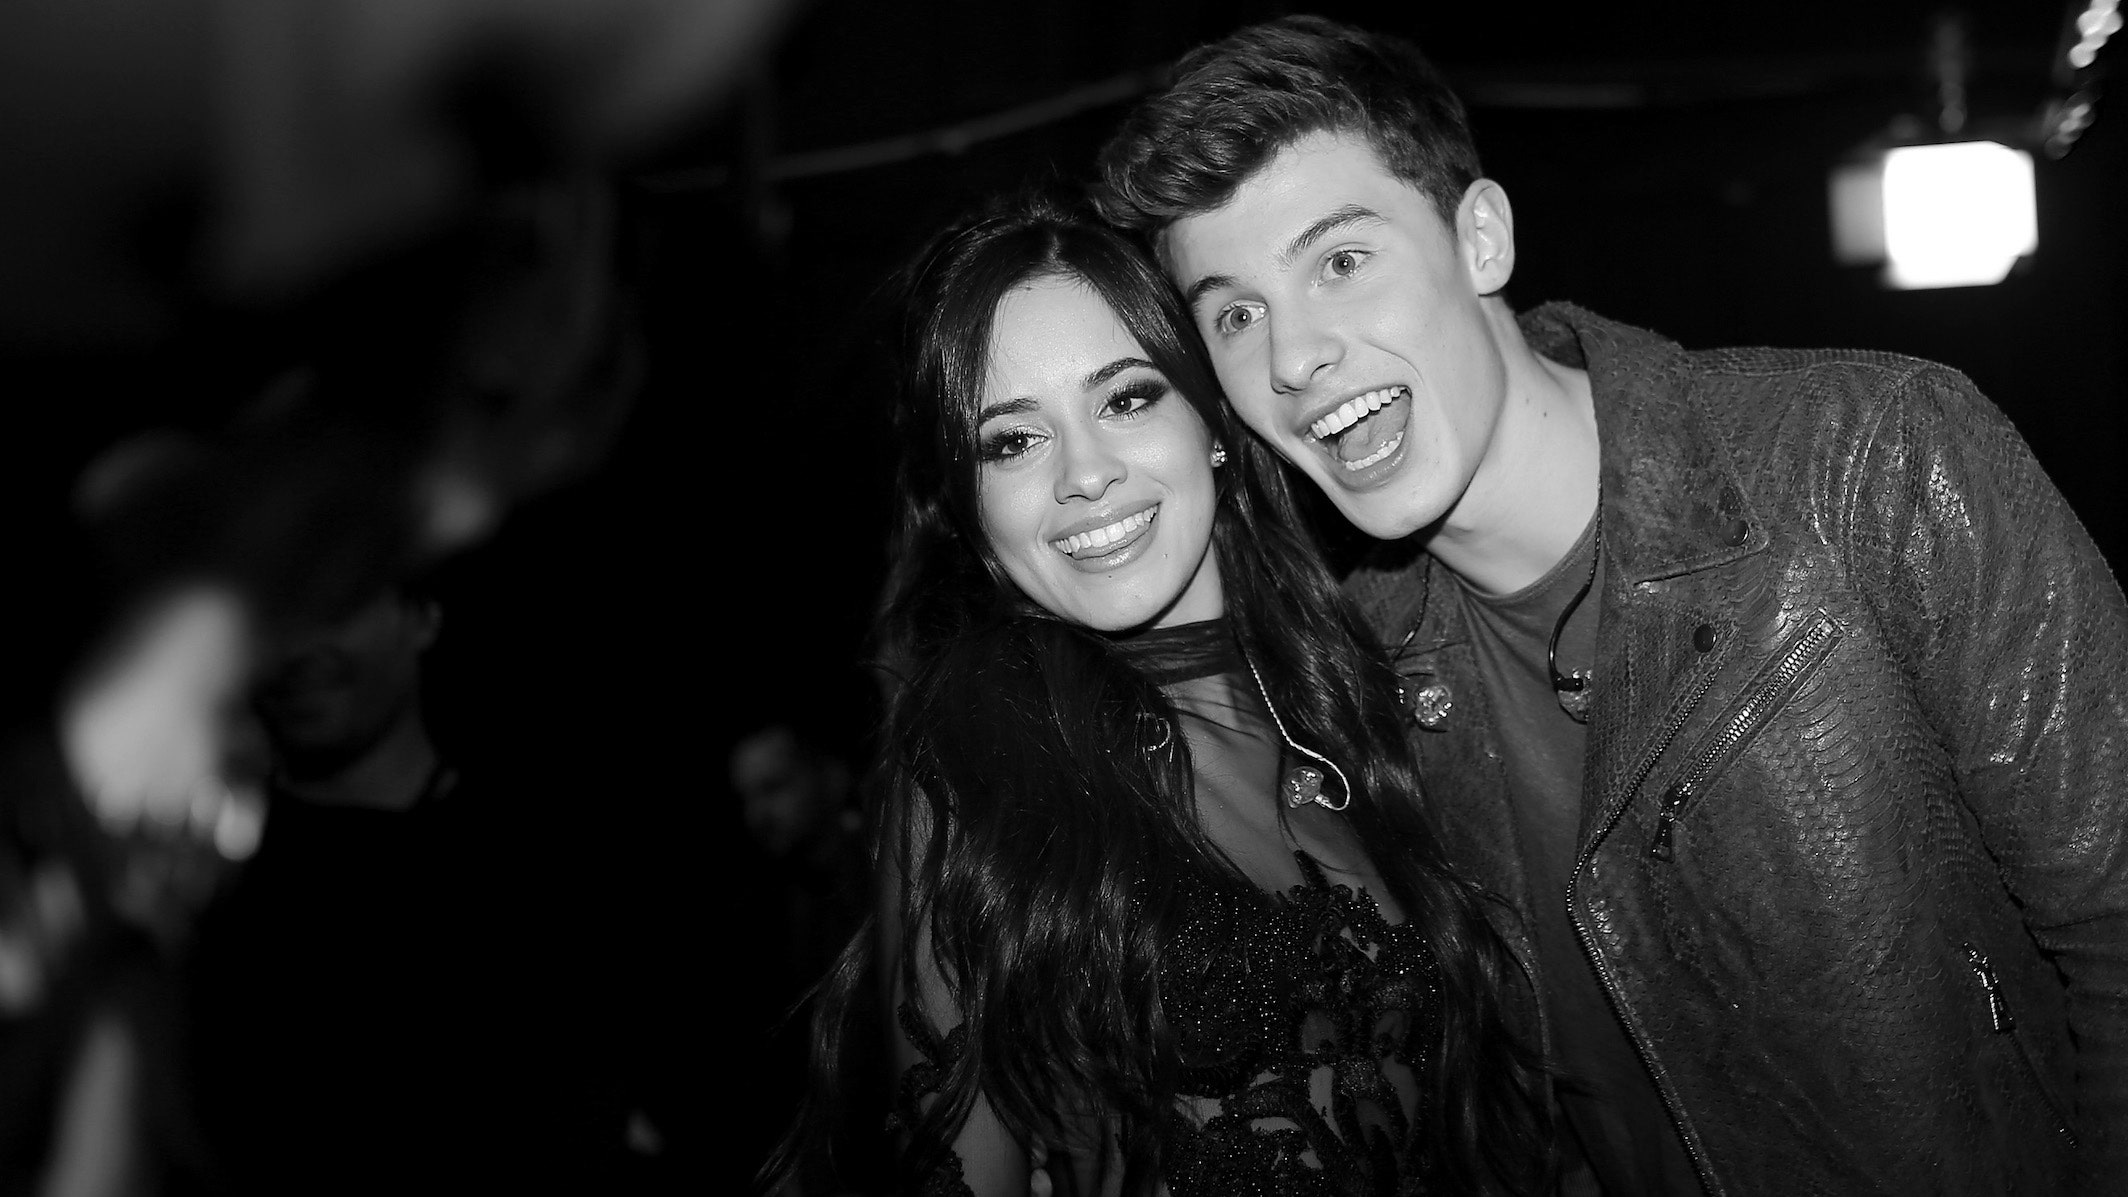 Listen to Camila Cabello and Shawn Mendes' New Song “Señorita”